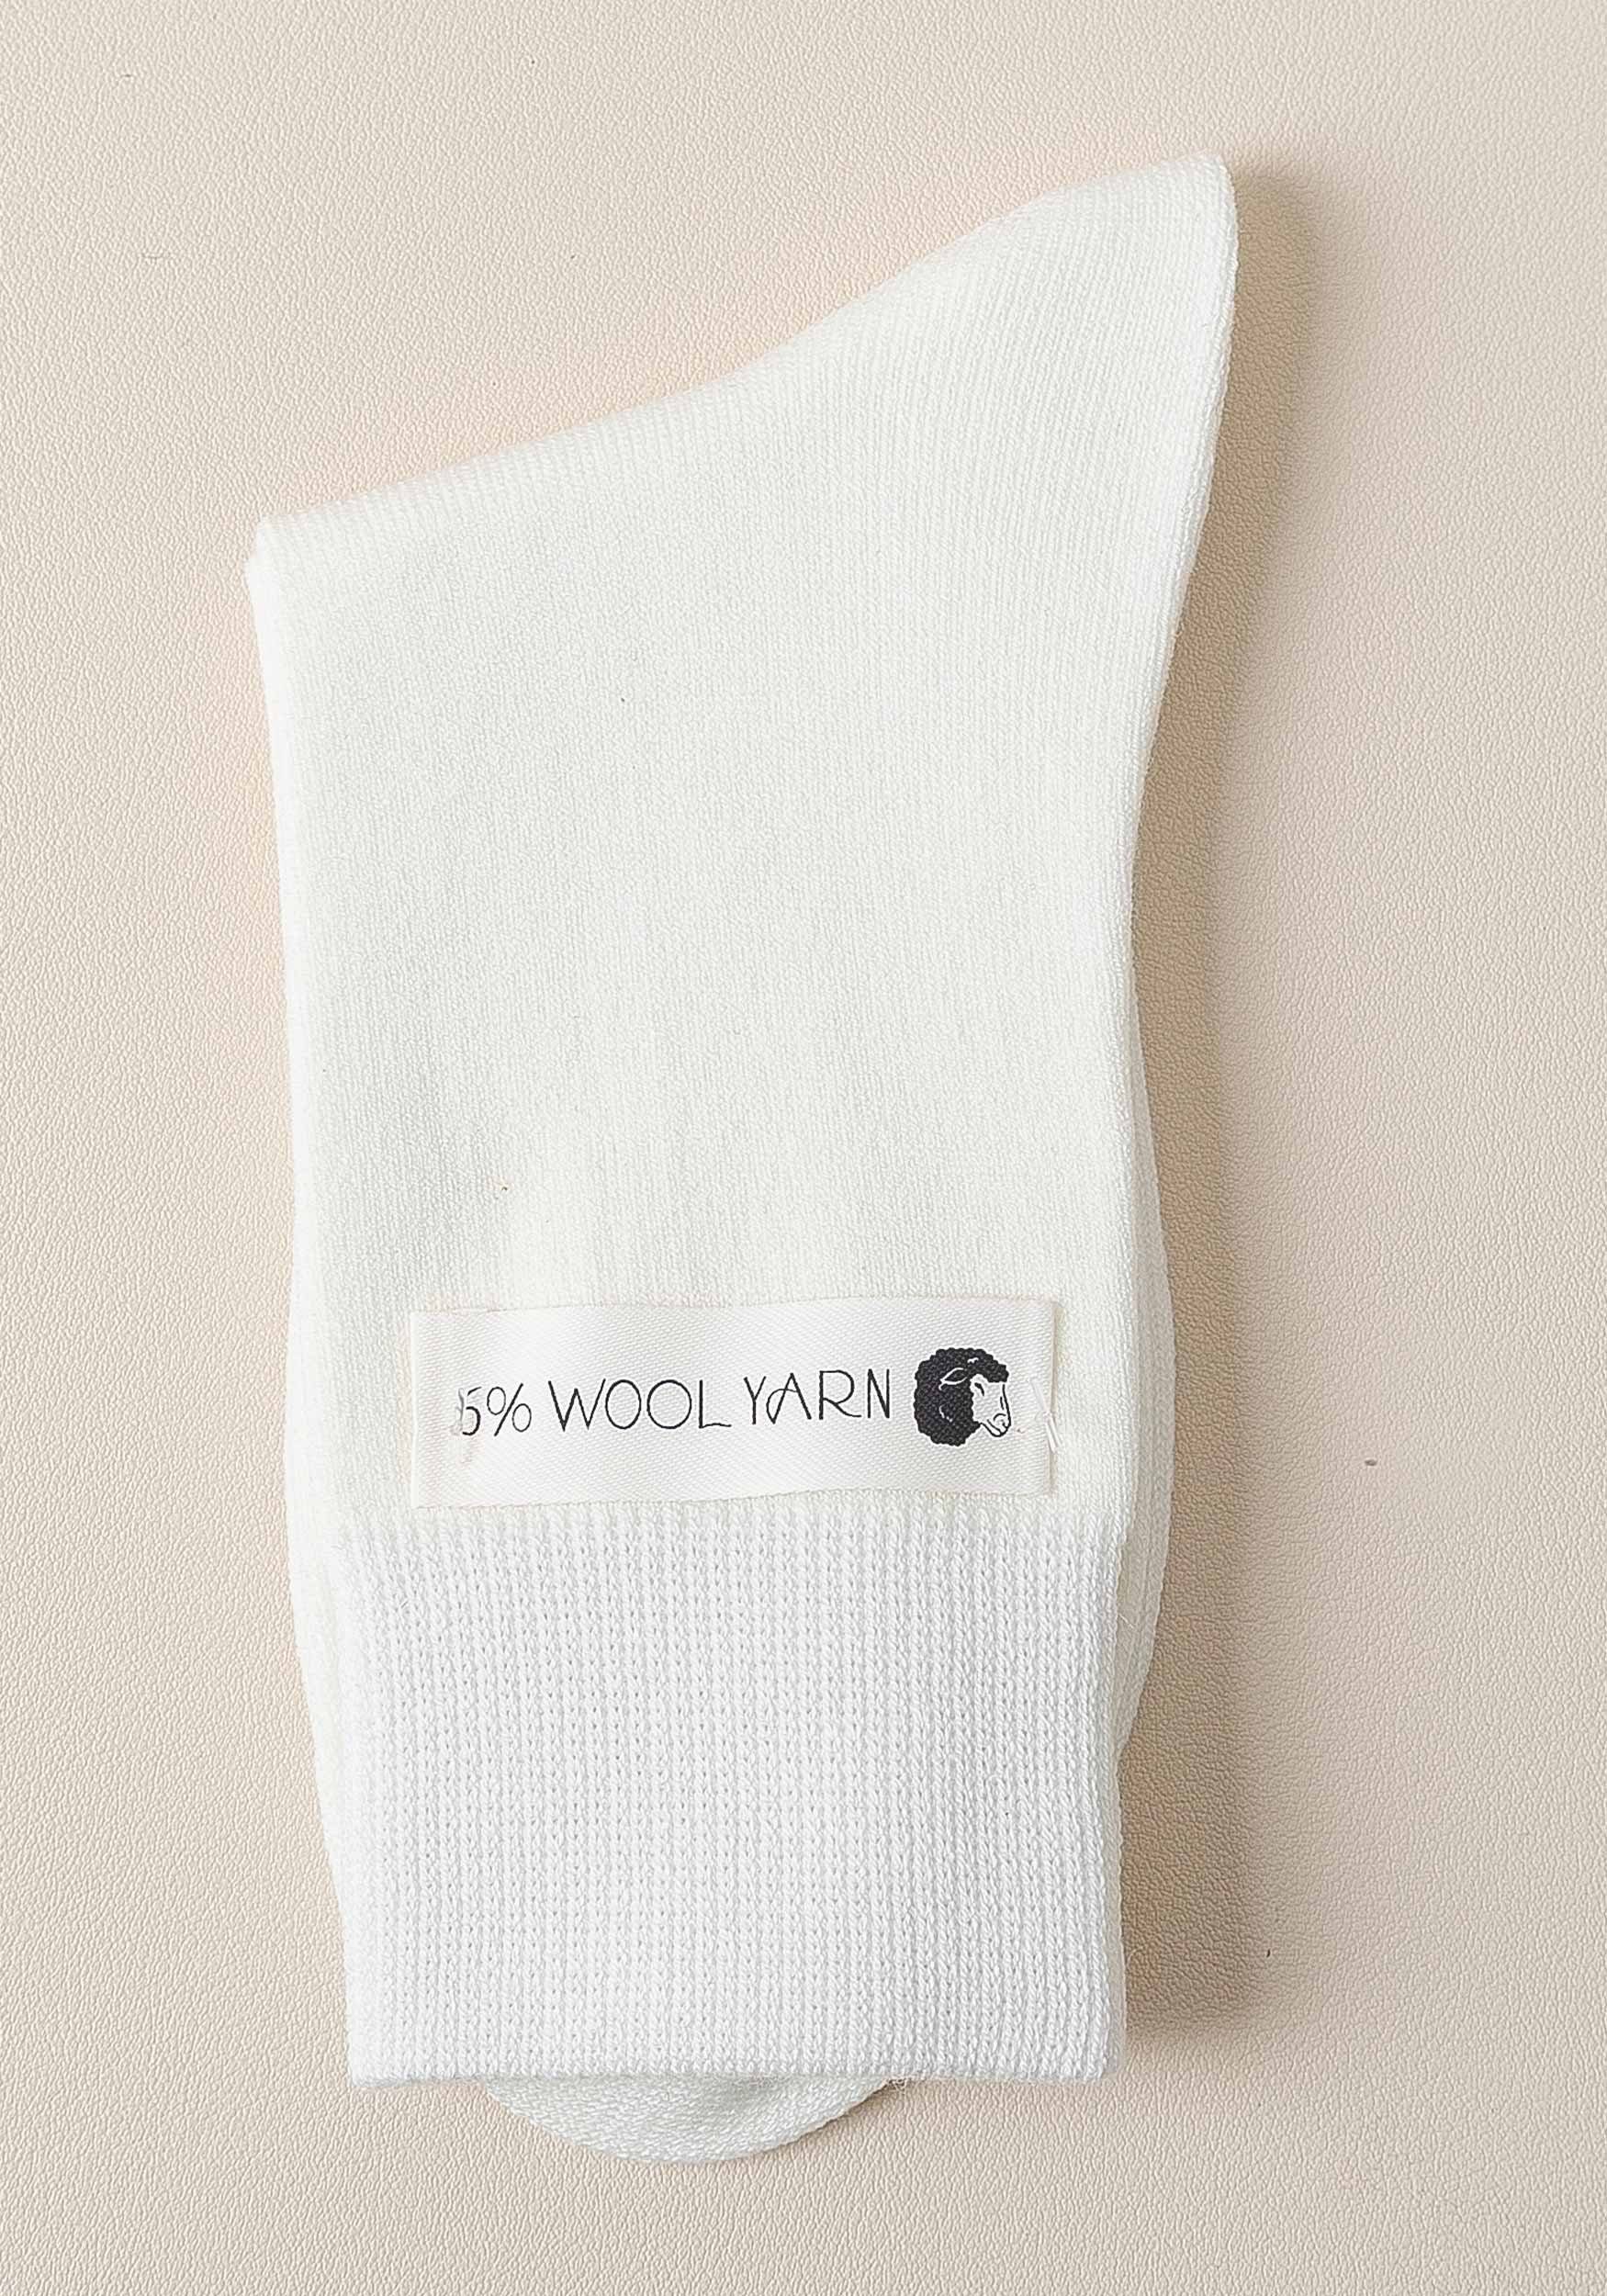 kalte MAGICSHE Socken Thermosocken Länge warm für aus 3 mittlerer Weiß (2-Paar) Damen Tage Wolle Paar